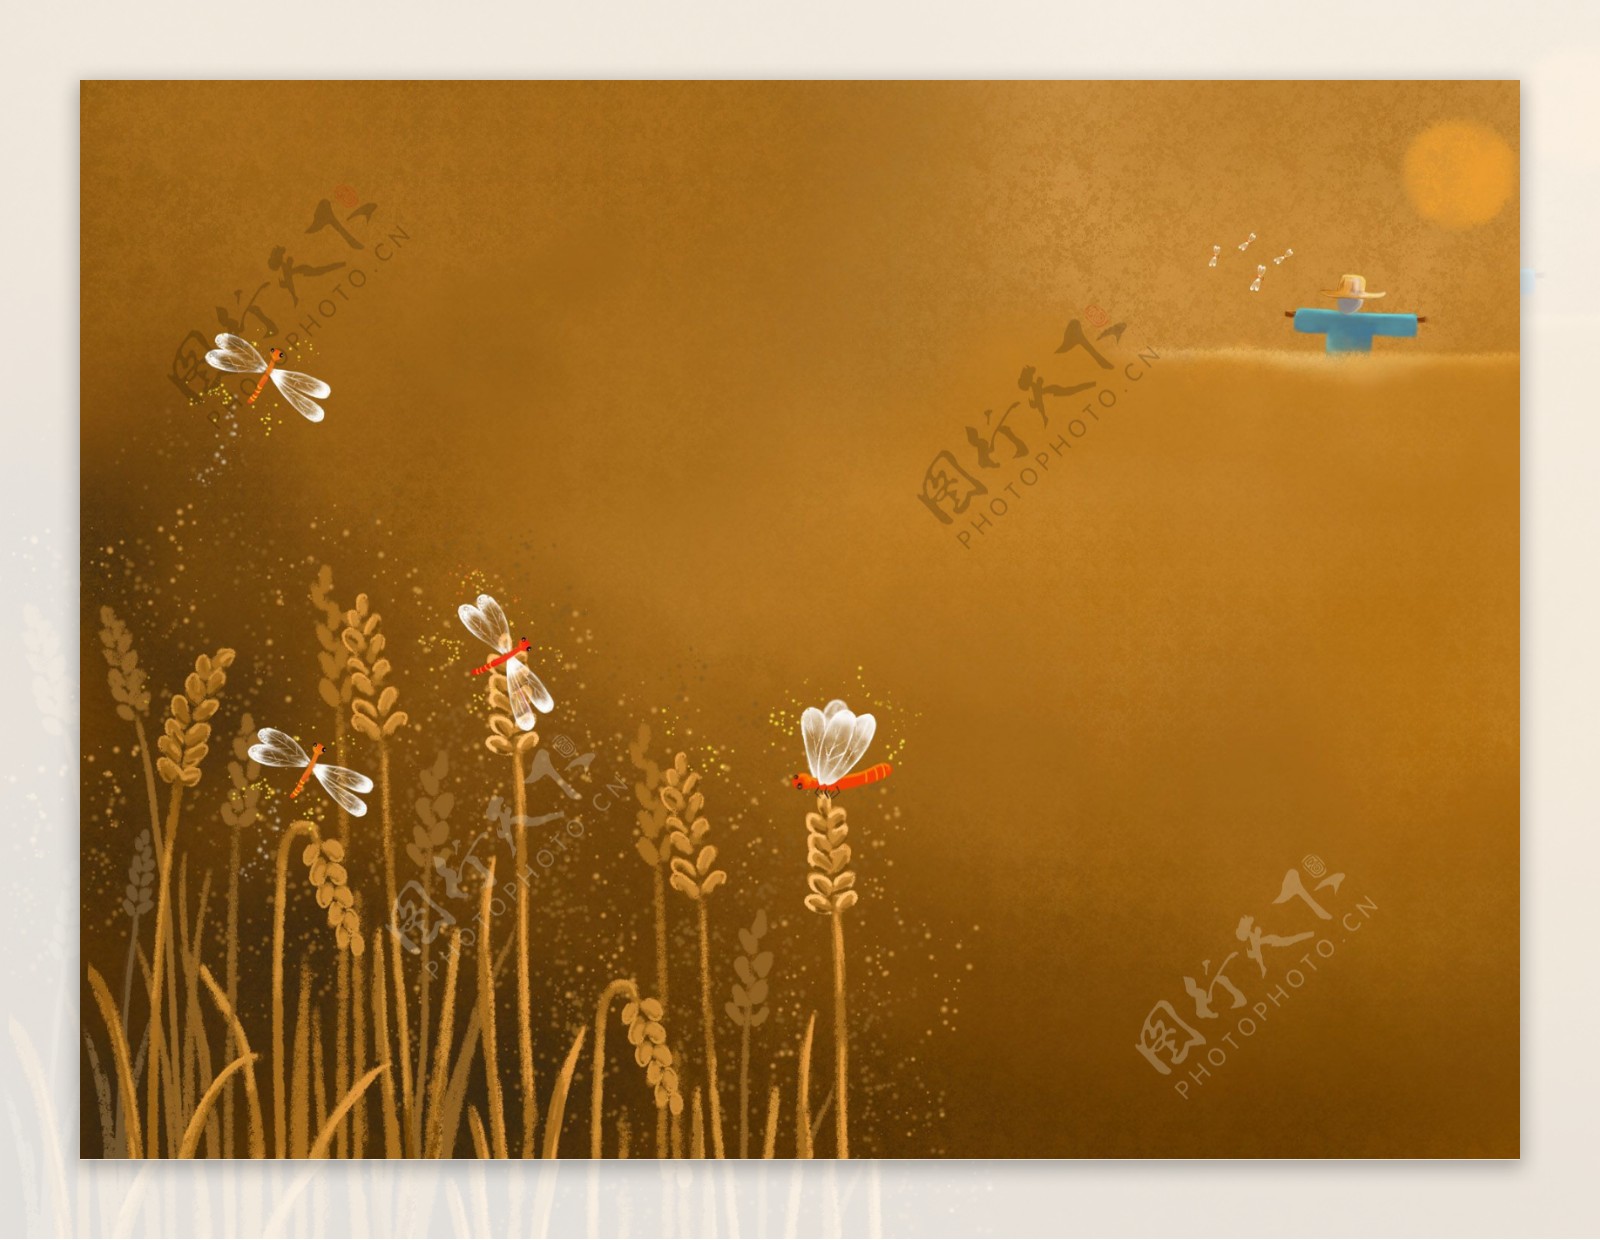 蜻蜓稻谷卡通背景